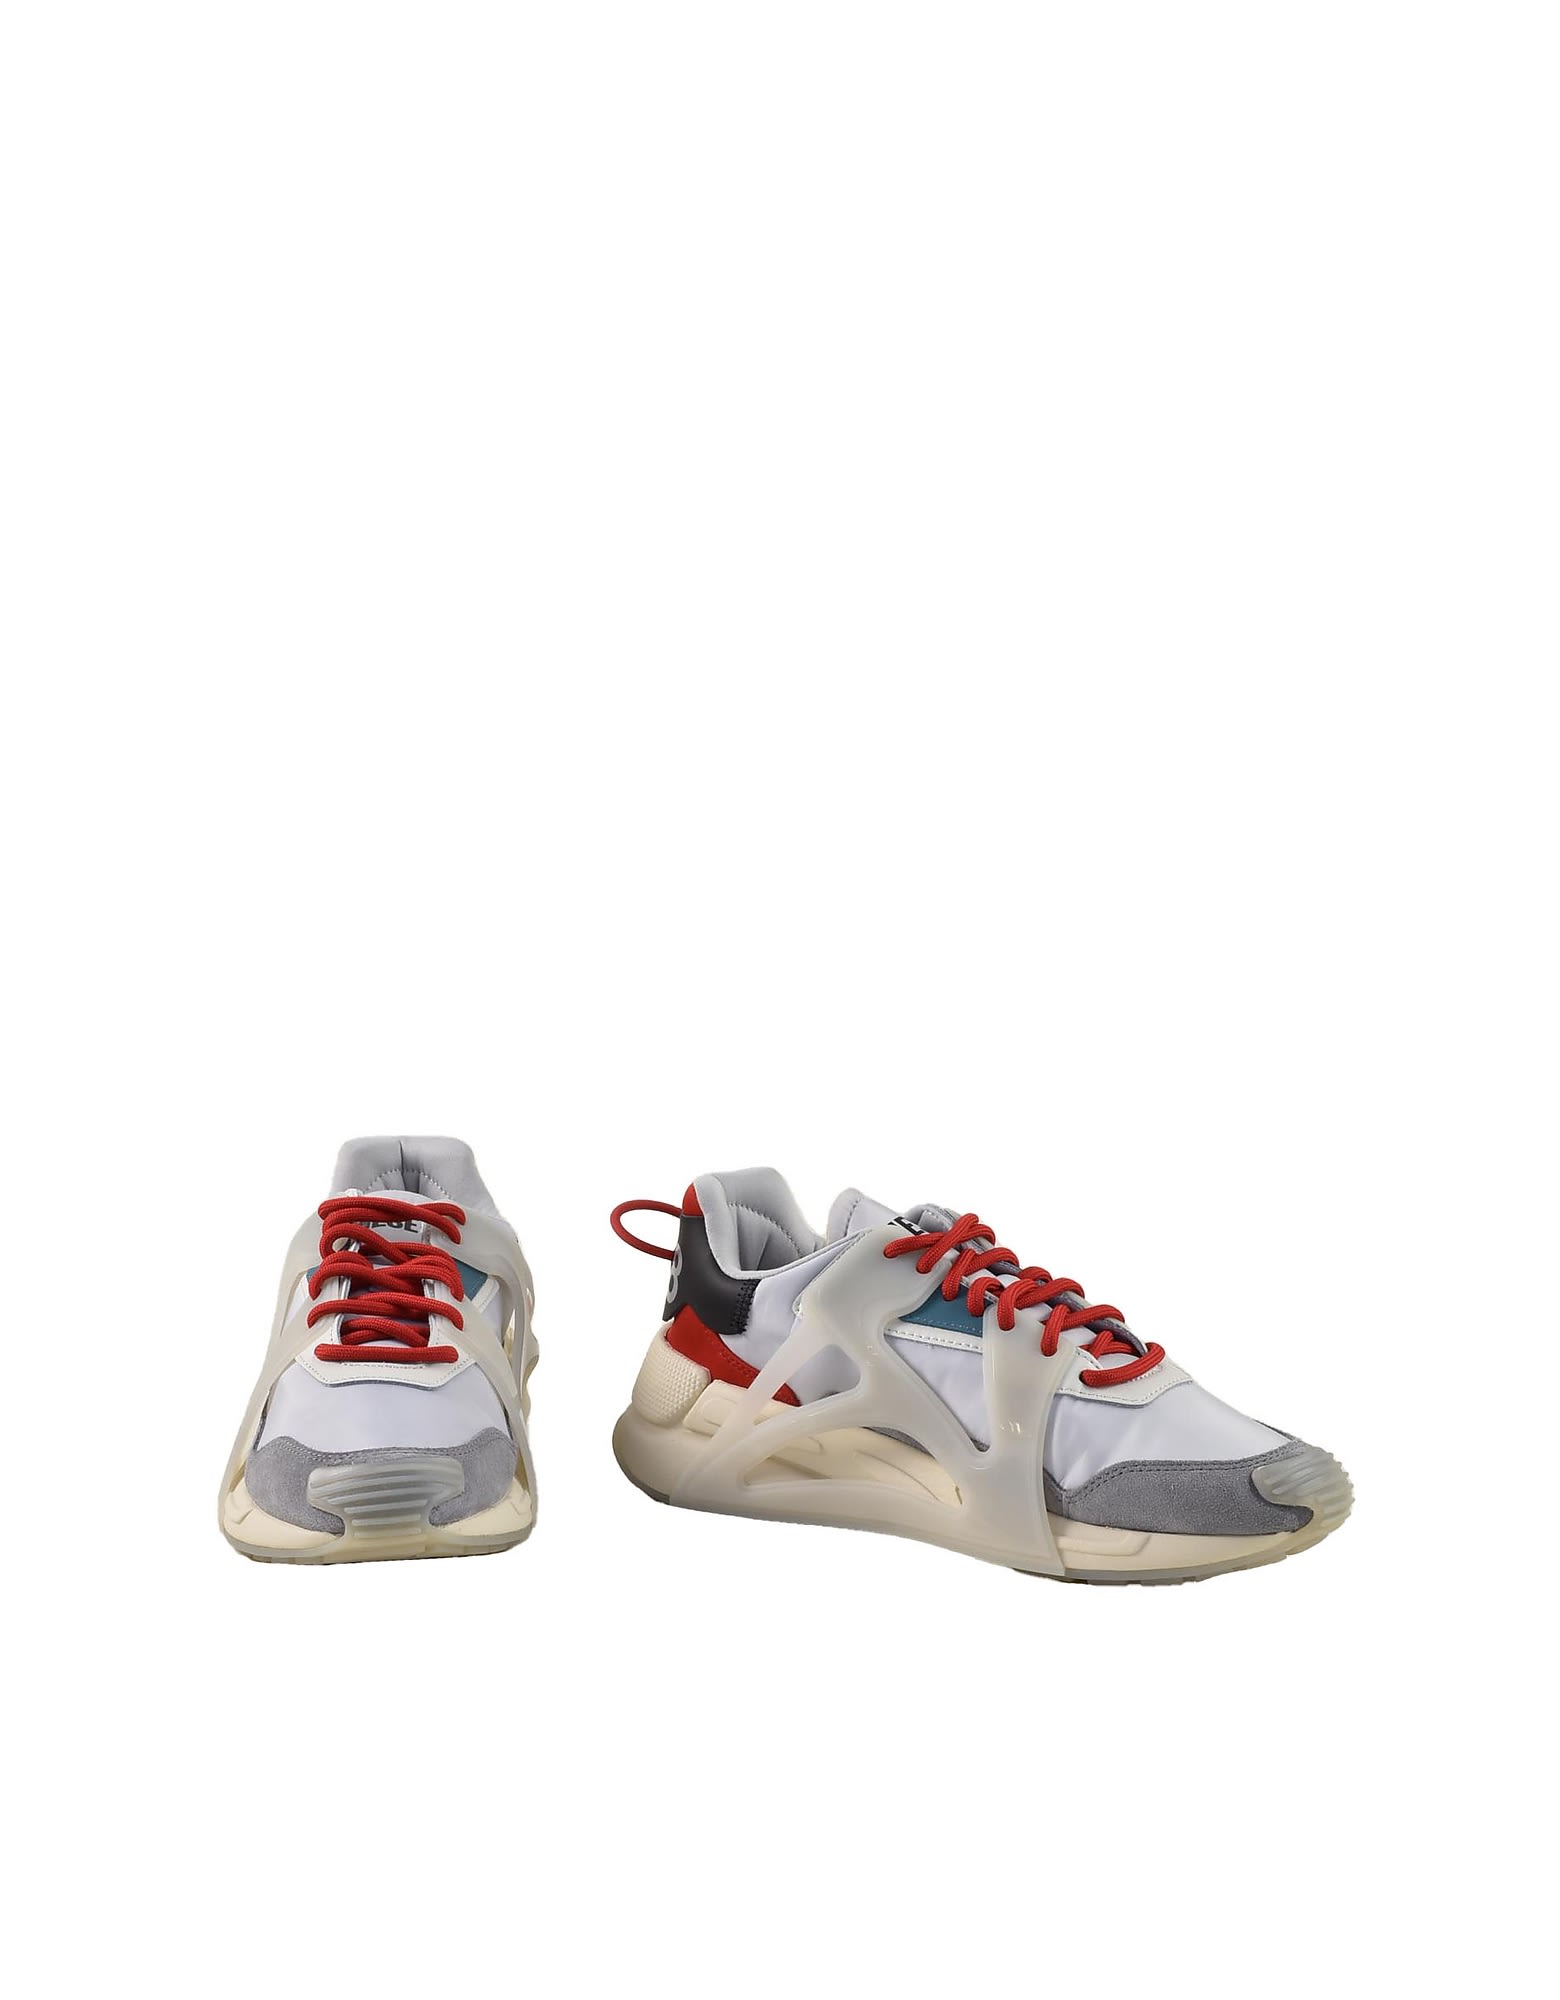 Diesel Mens Gray/red Sneakers